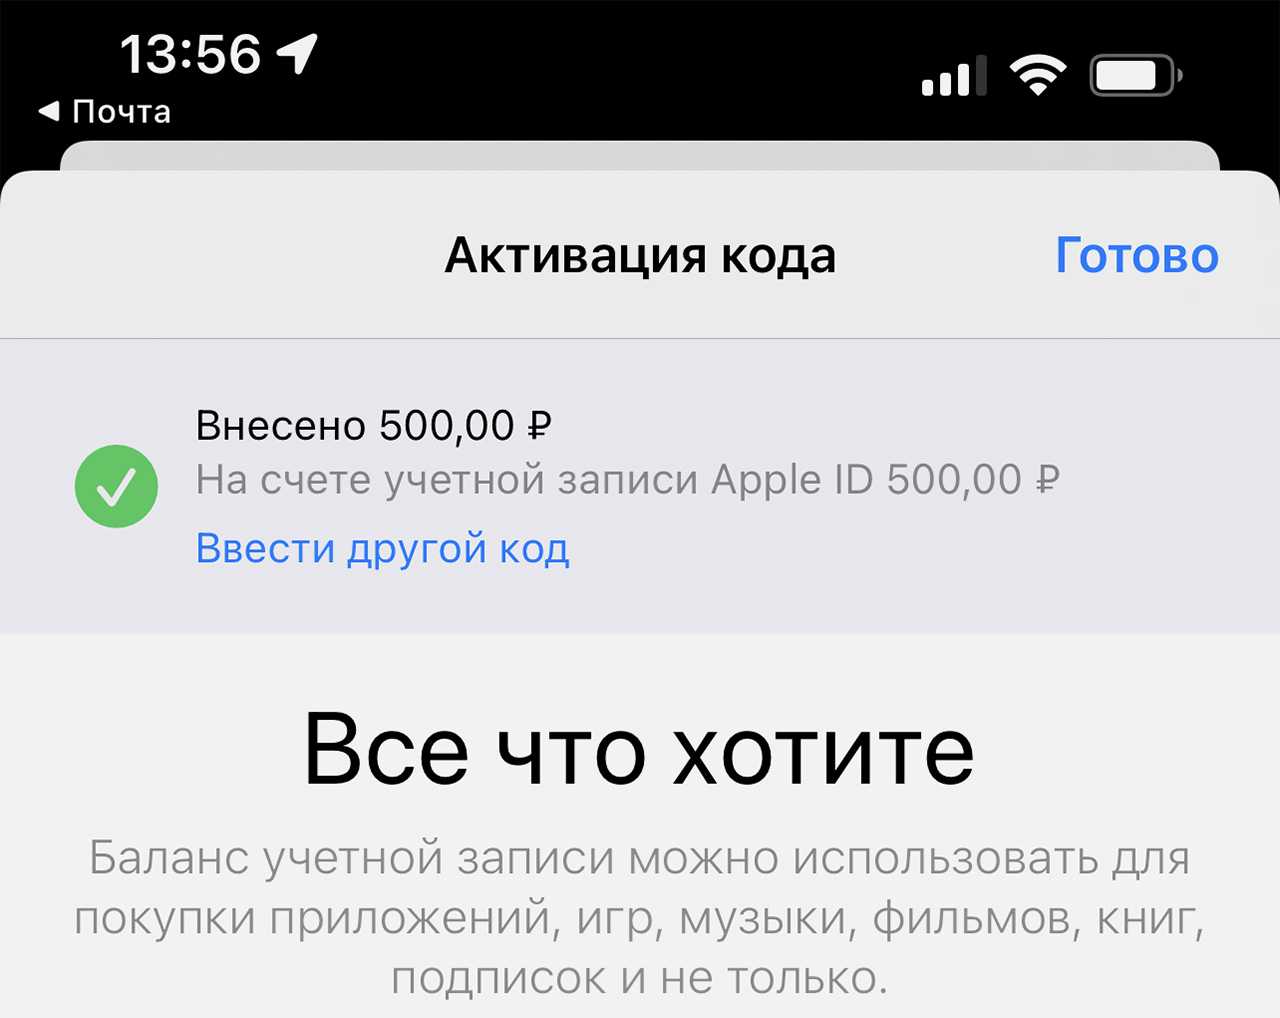 Несмотря на недавнее снижение цен в официальном онлайн-магазине Apple в России, стоимость iPhone все равно остается высокой по сравнению с таковой в представ